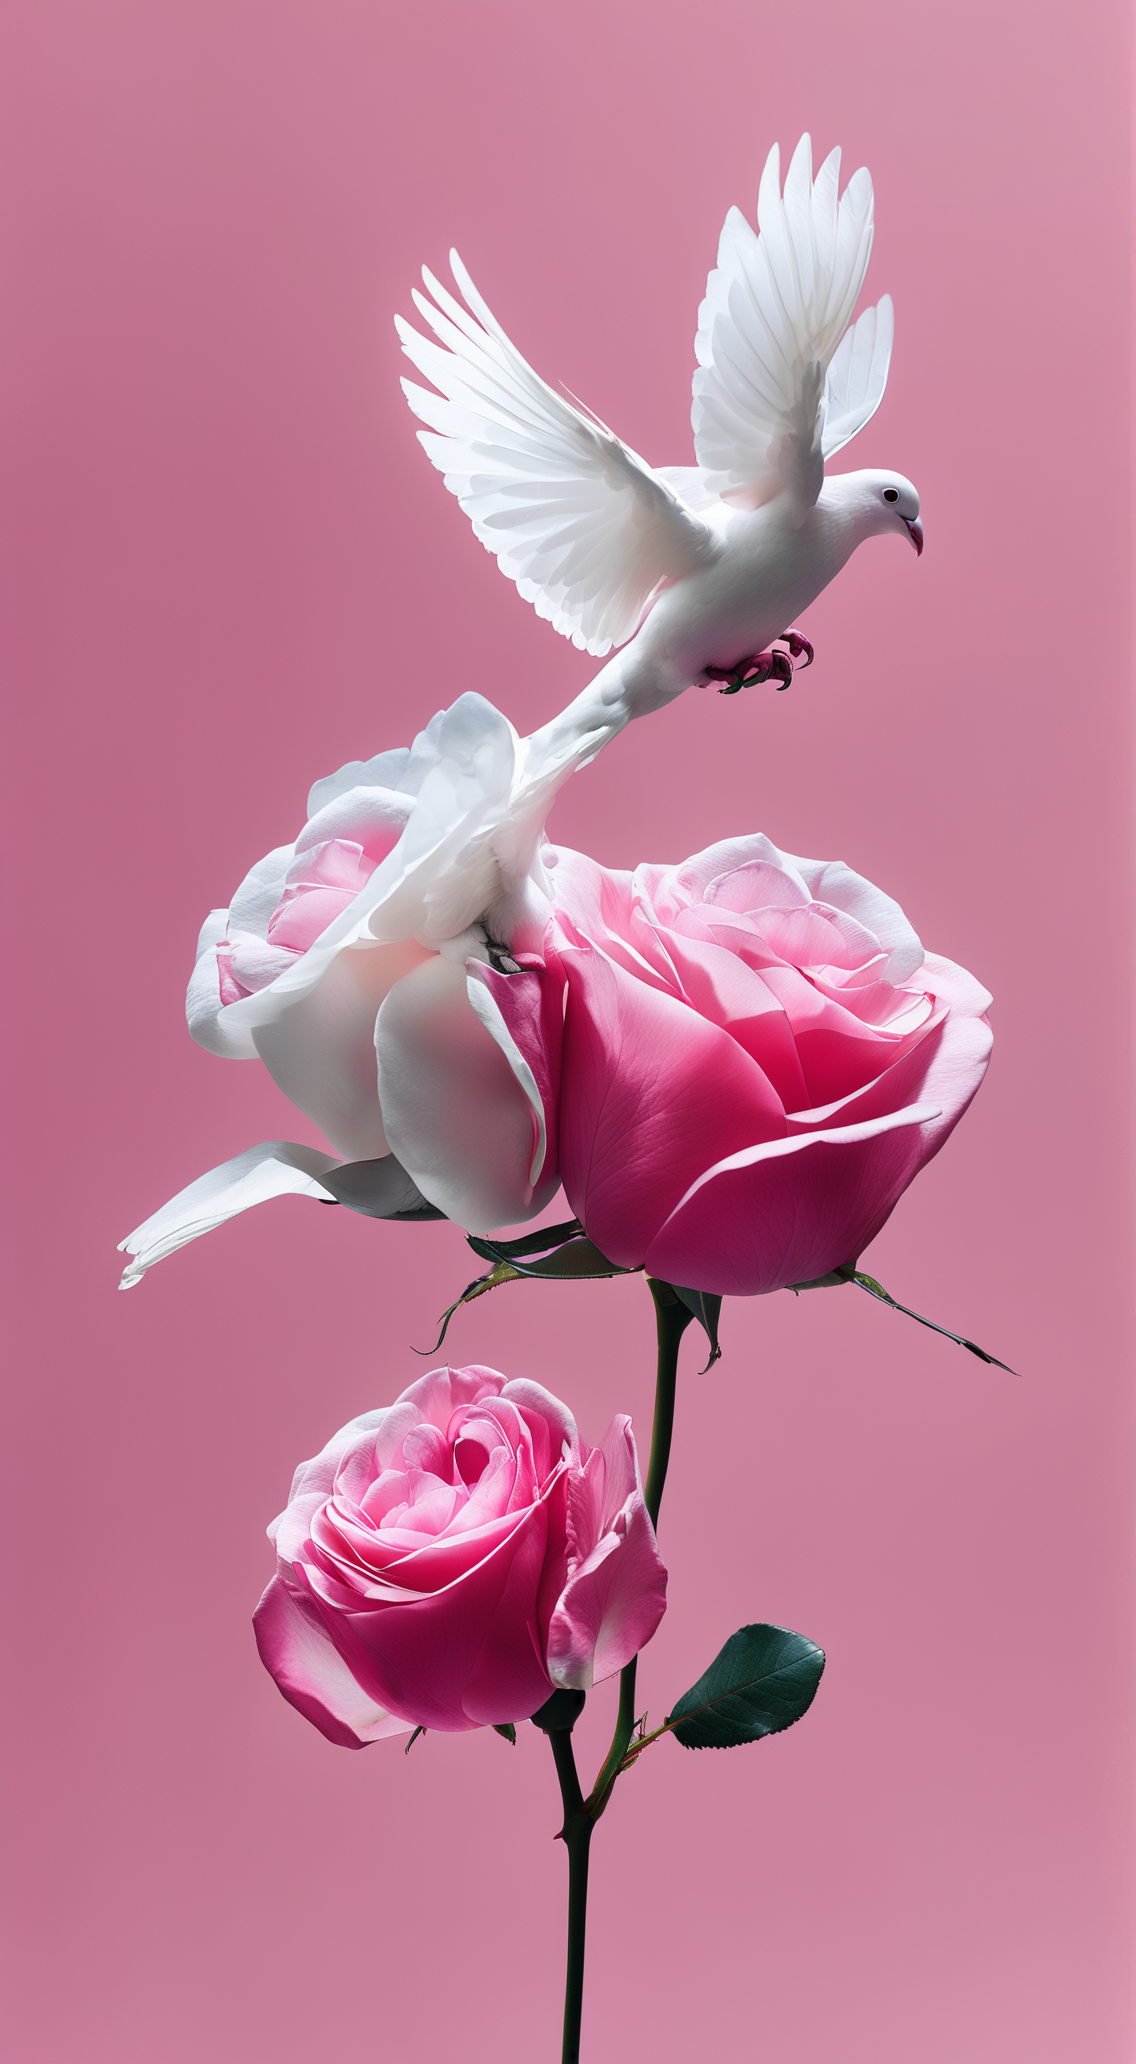 和平鸽与玫瑰